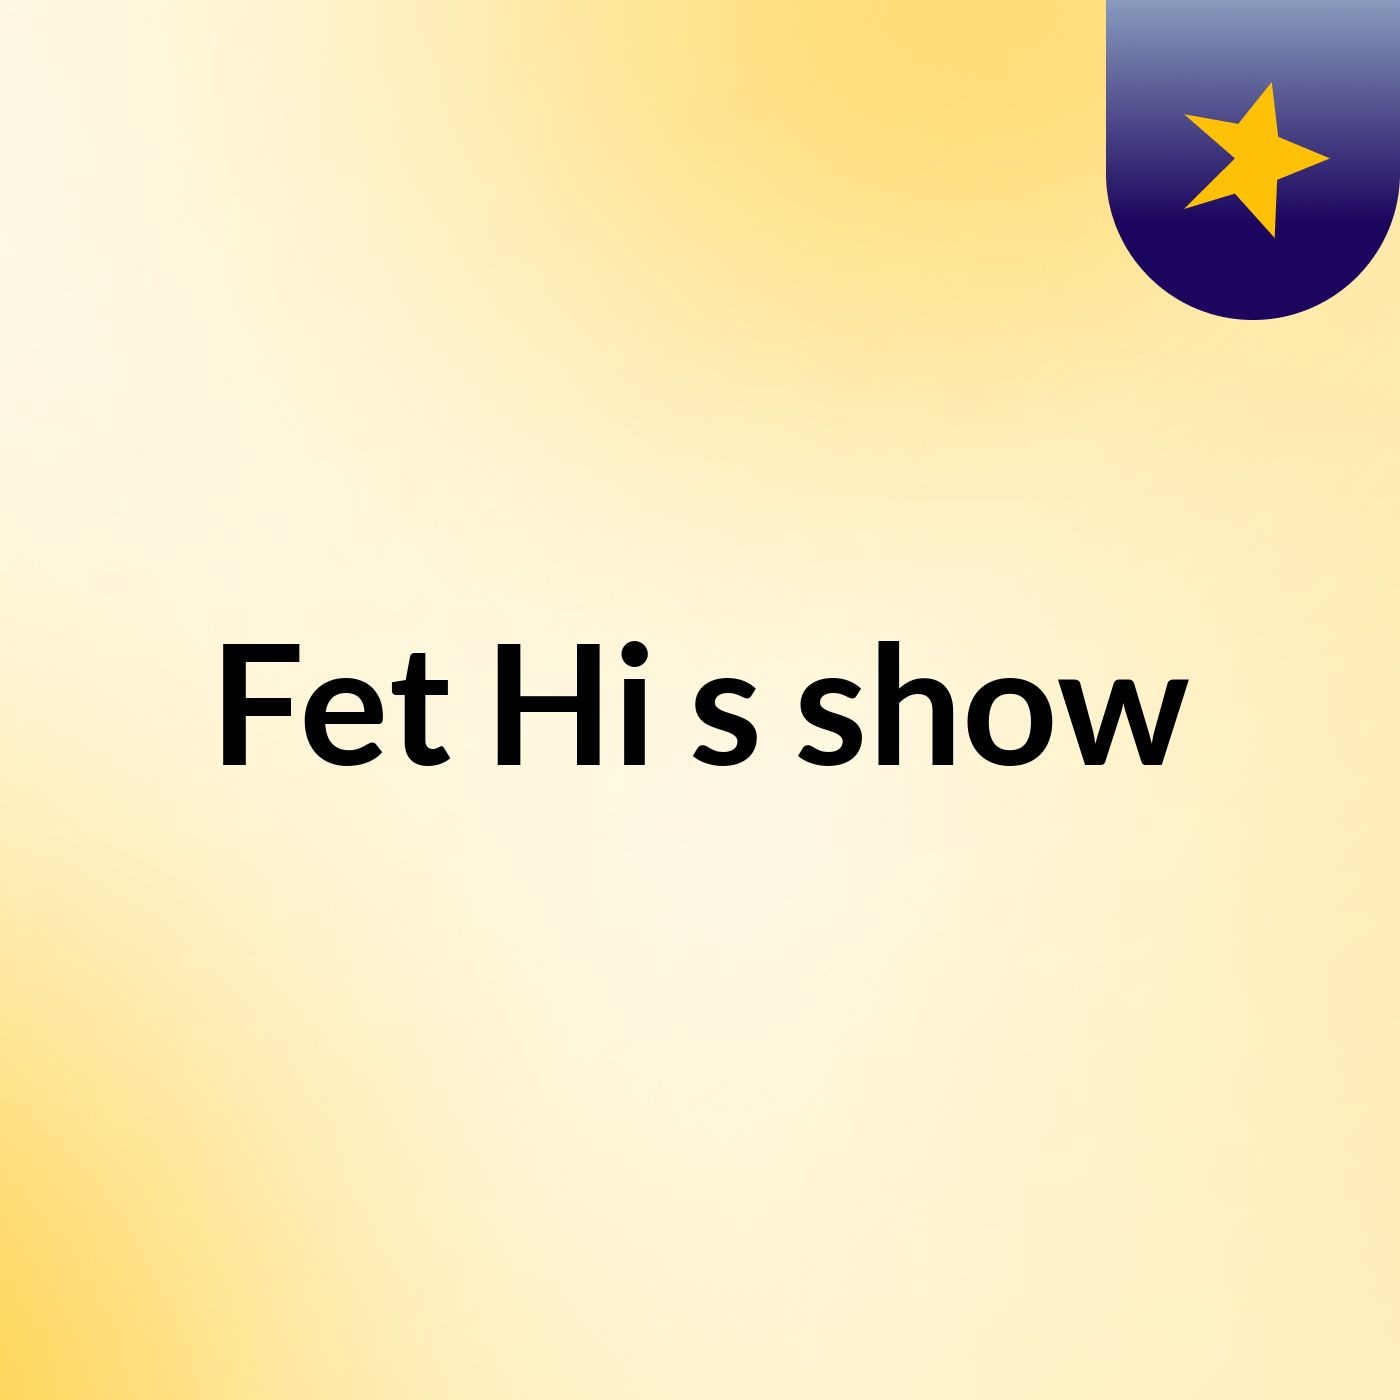 Fet Hi's show